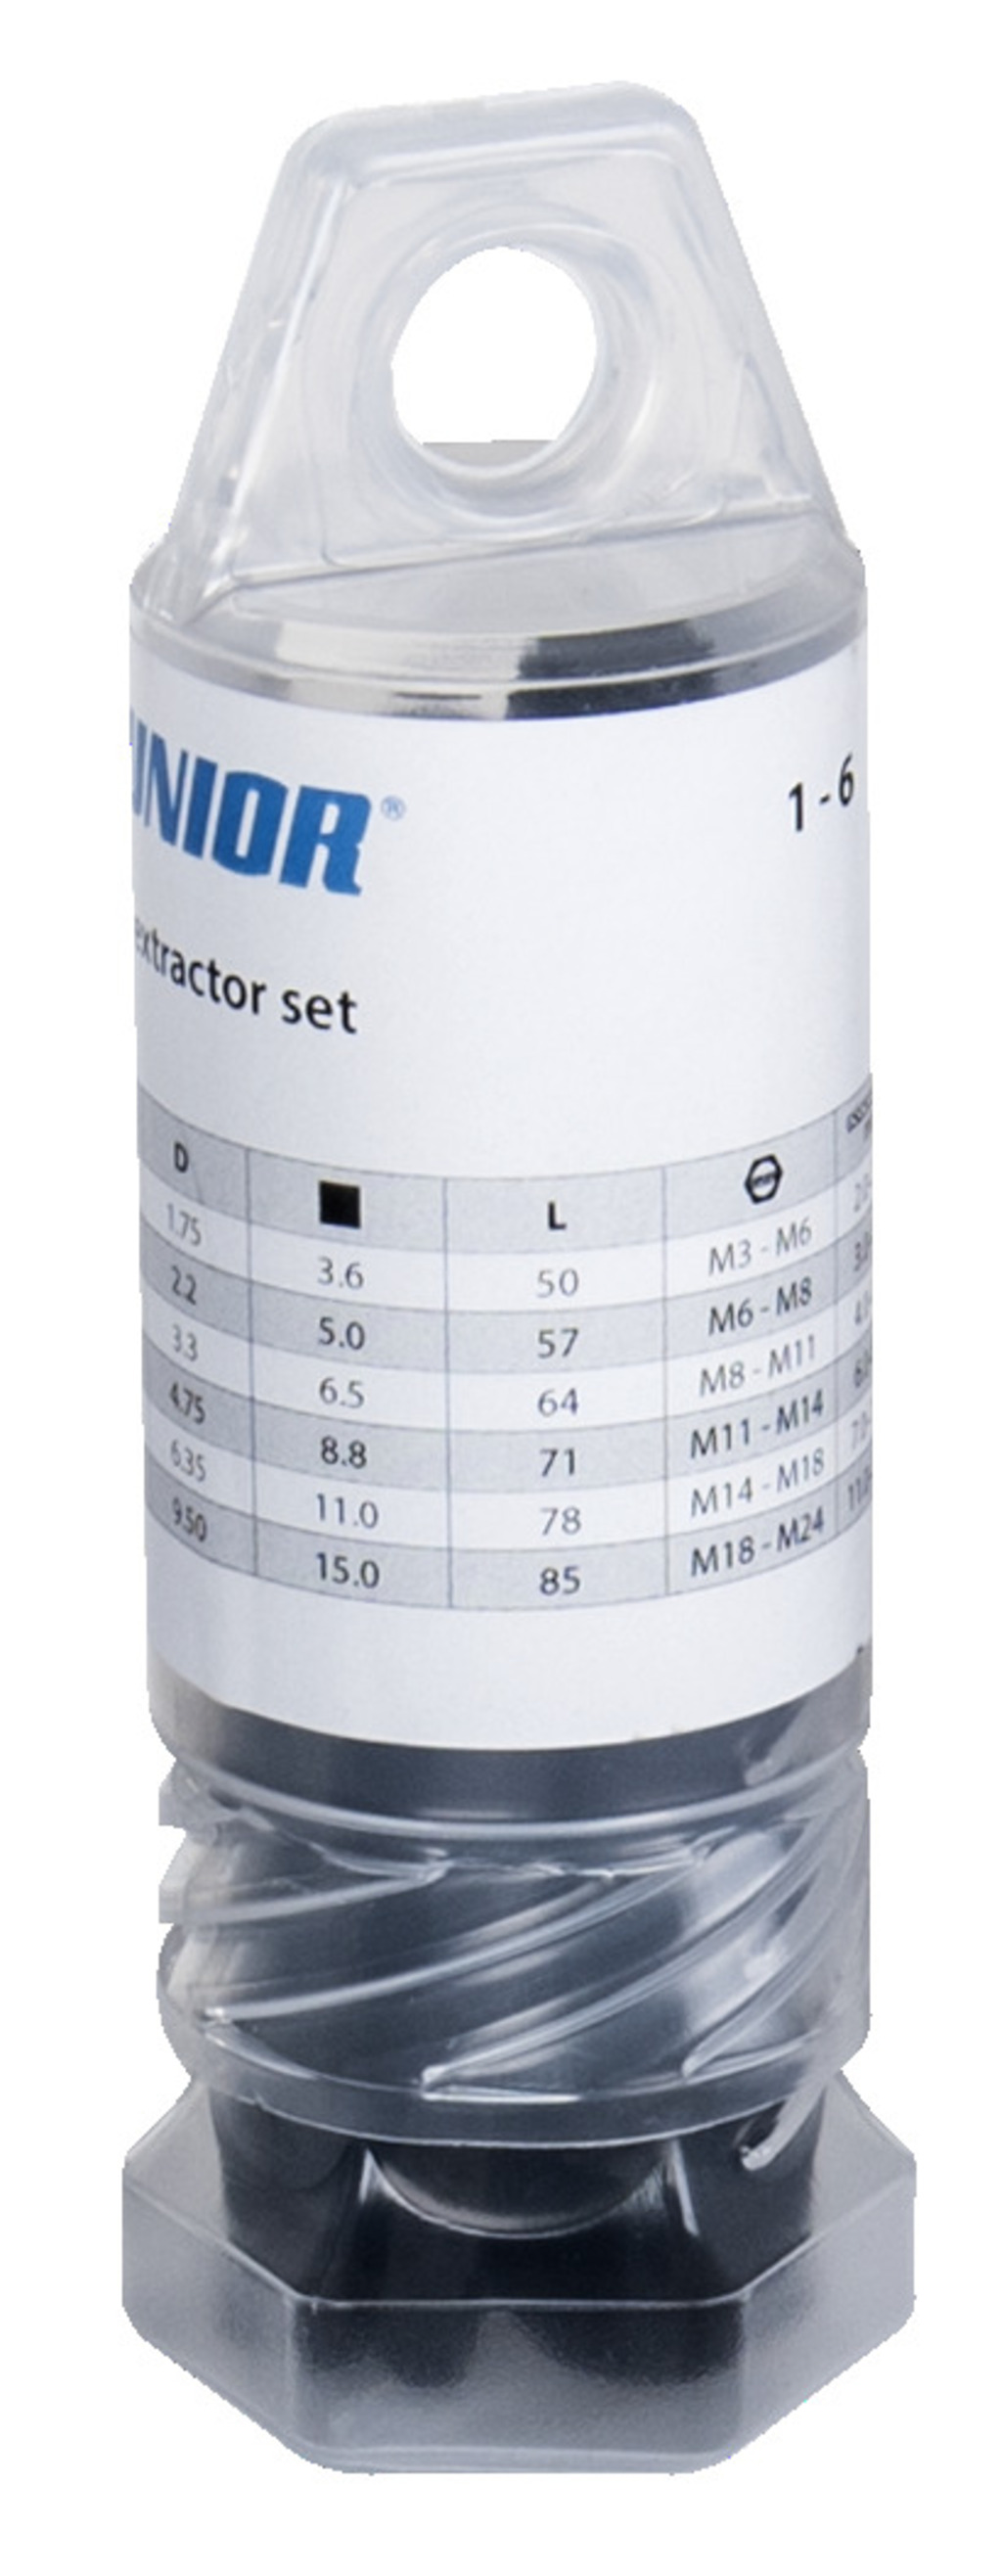 Unior 616821 Set extractoare suruburi 1-6 mm, 6 piese